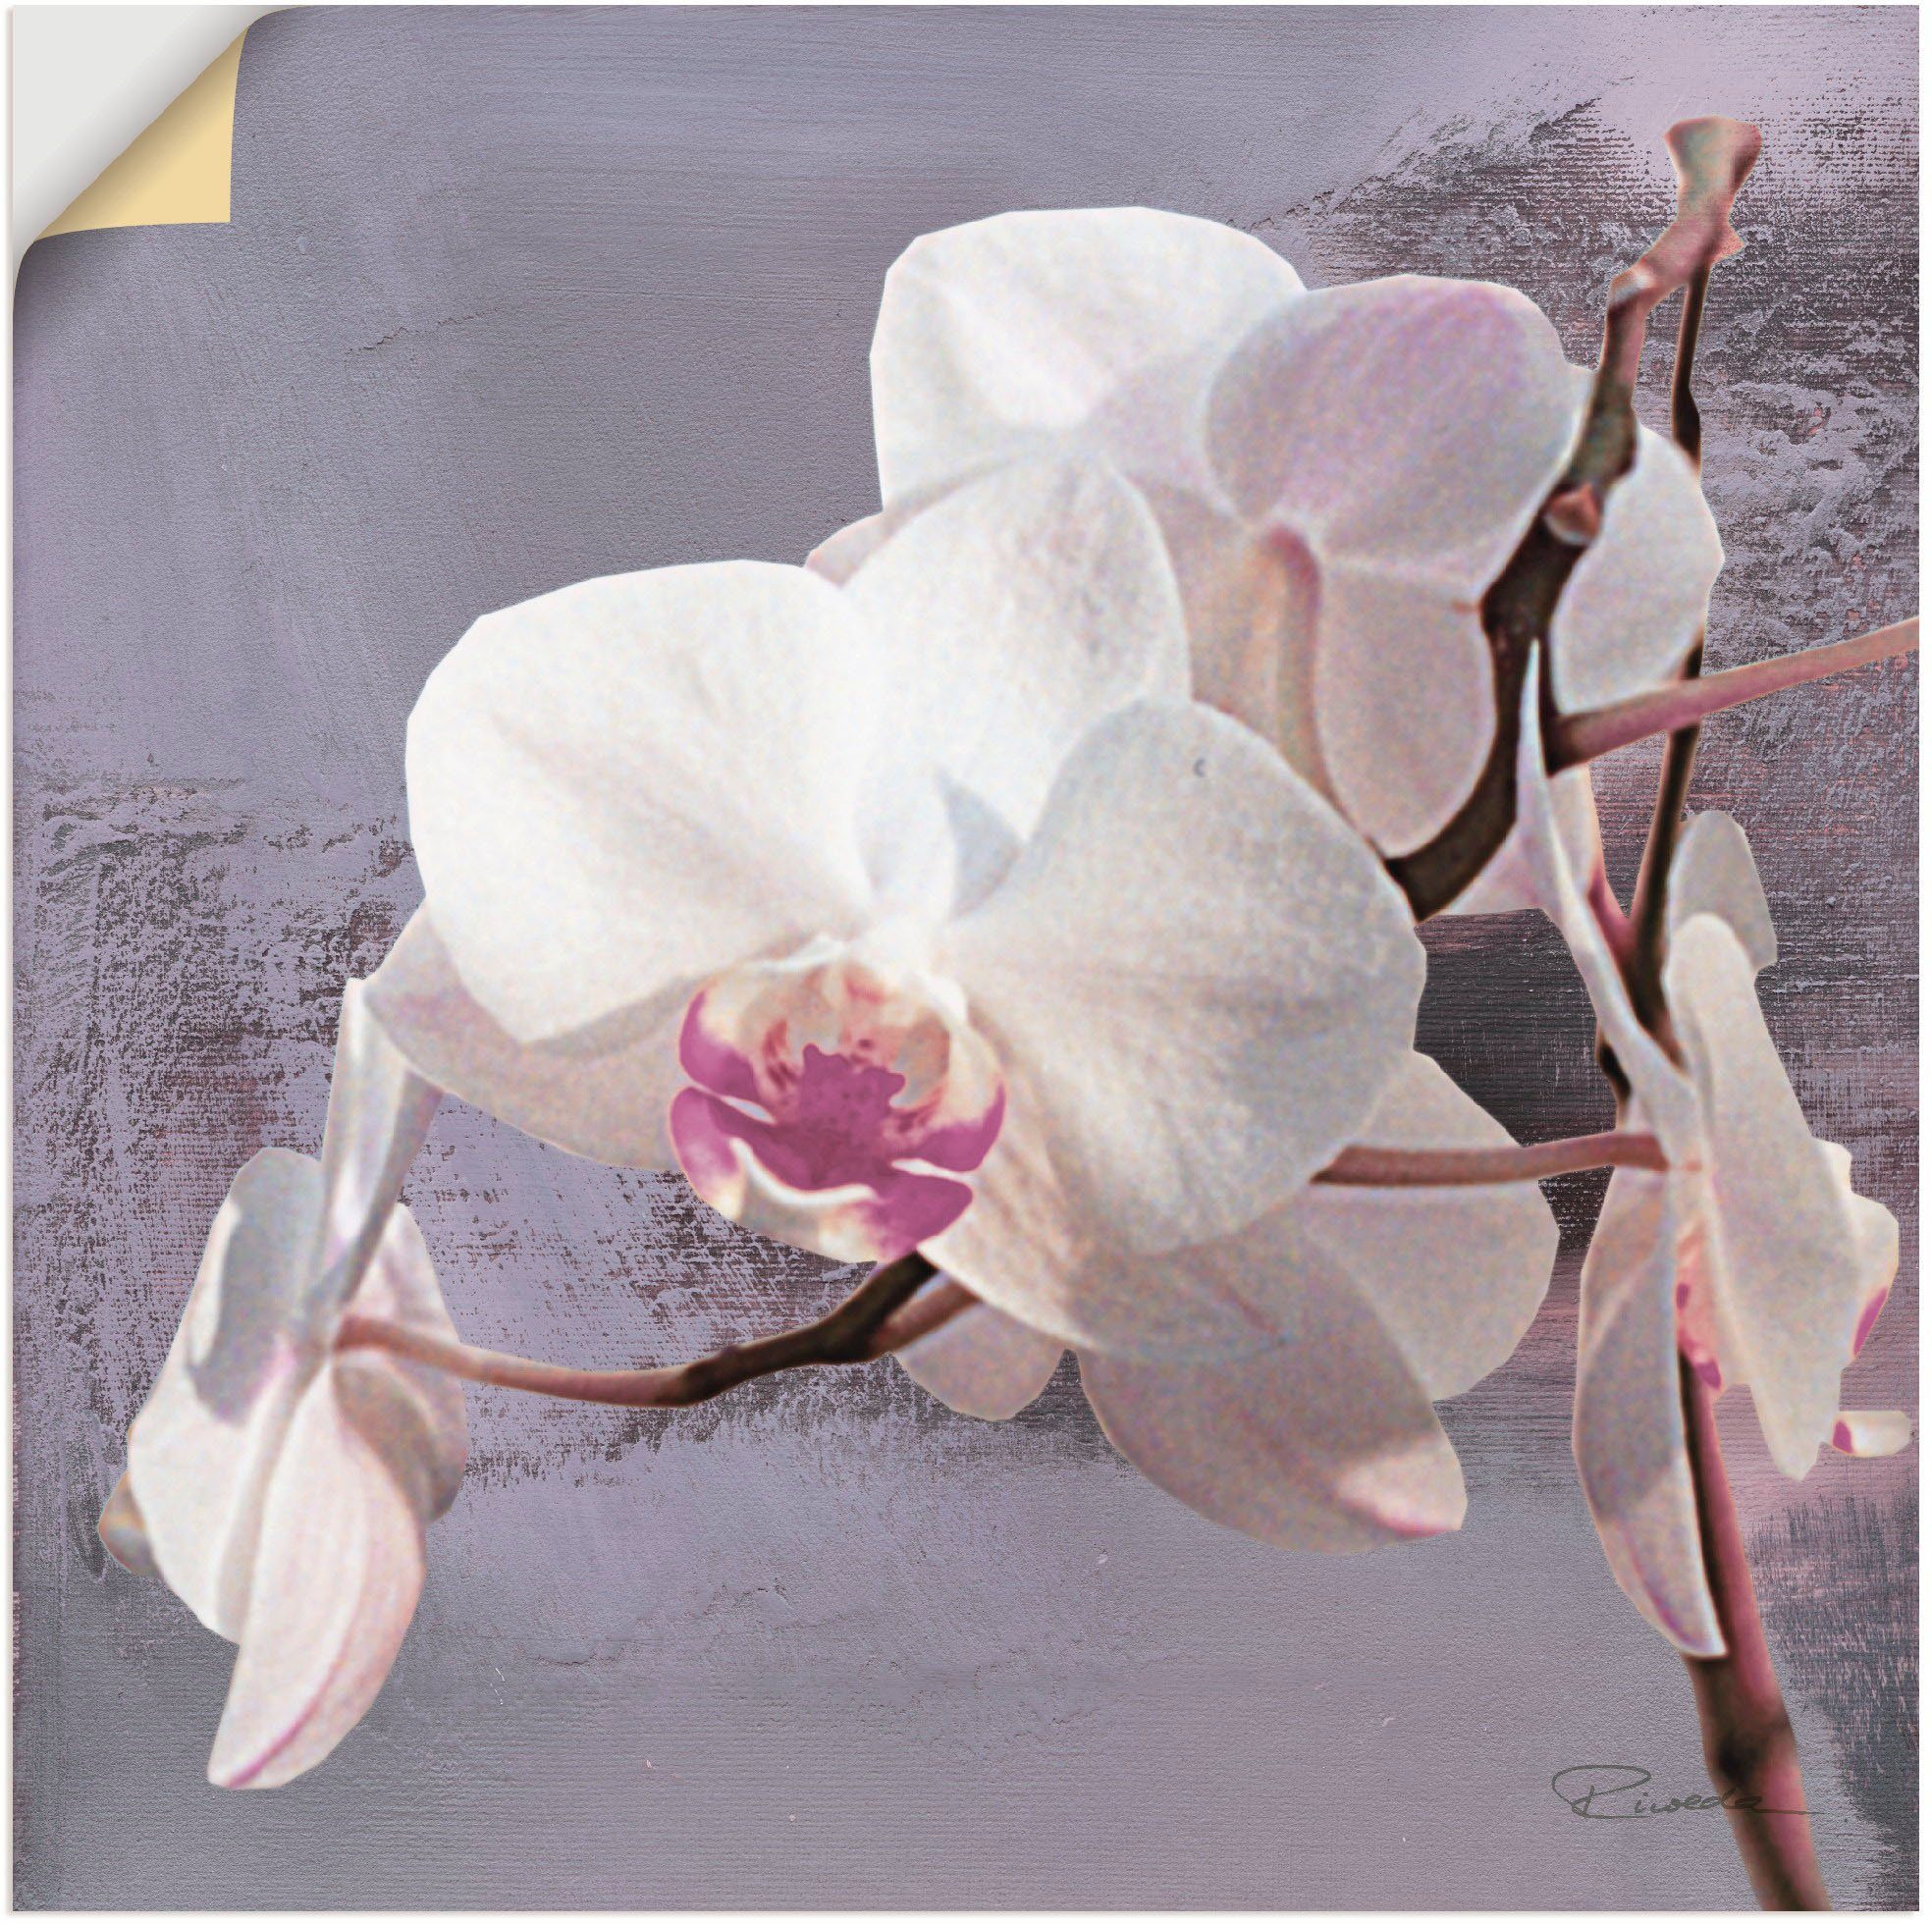 Artland Artprint Orchideeën voor violet I in vele afmetingen & productsoorten - artprint van aluminium / artprint voor buiten, artprint op linnen, poster, muursticker / wandfolie o